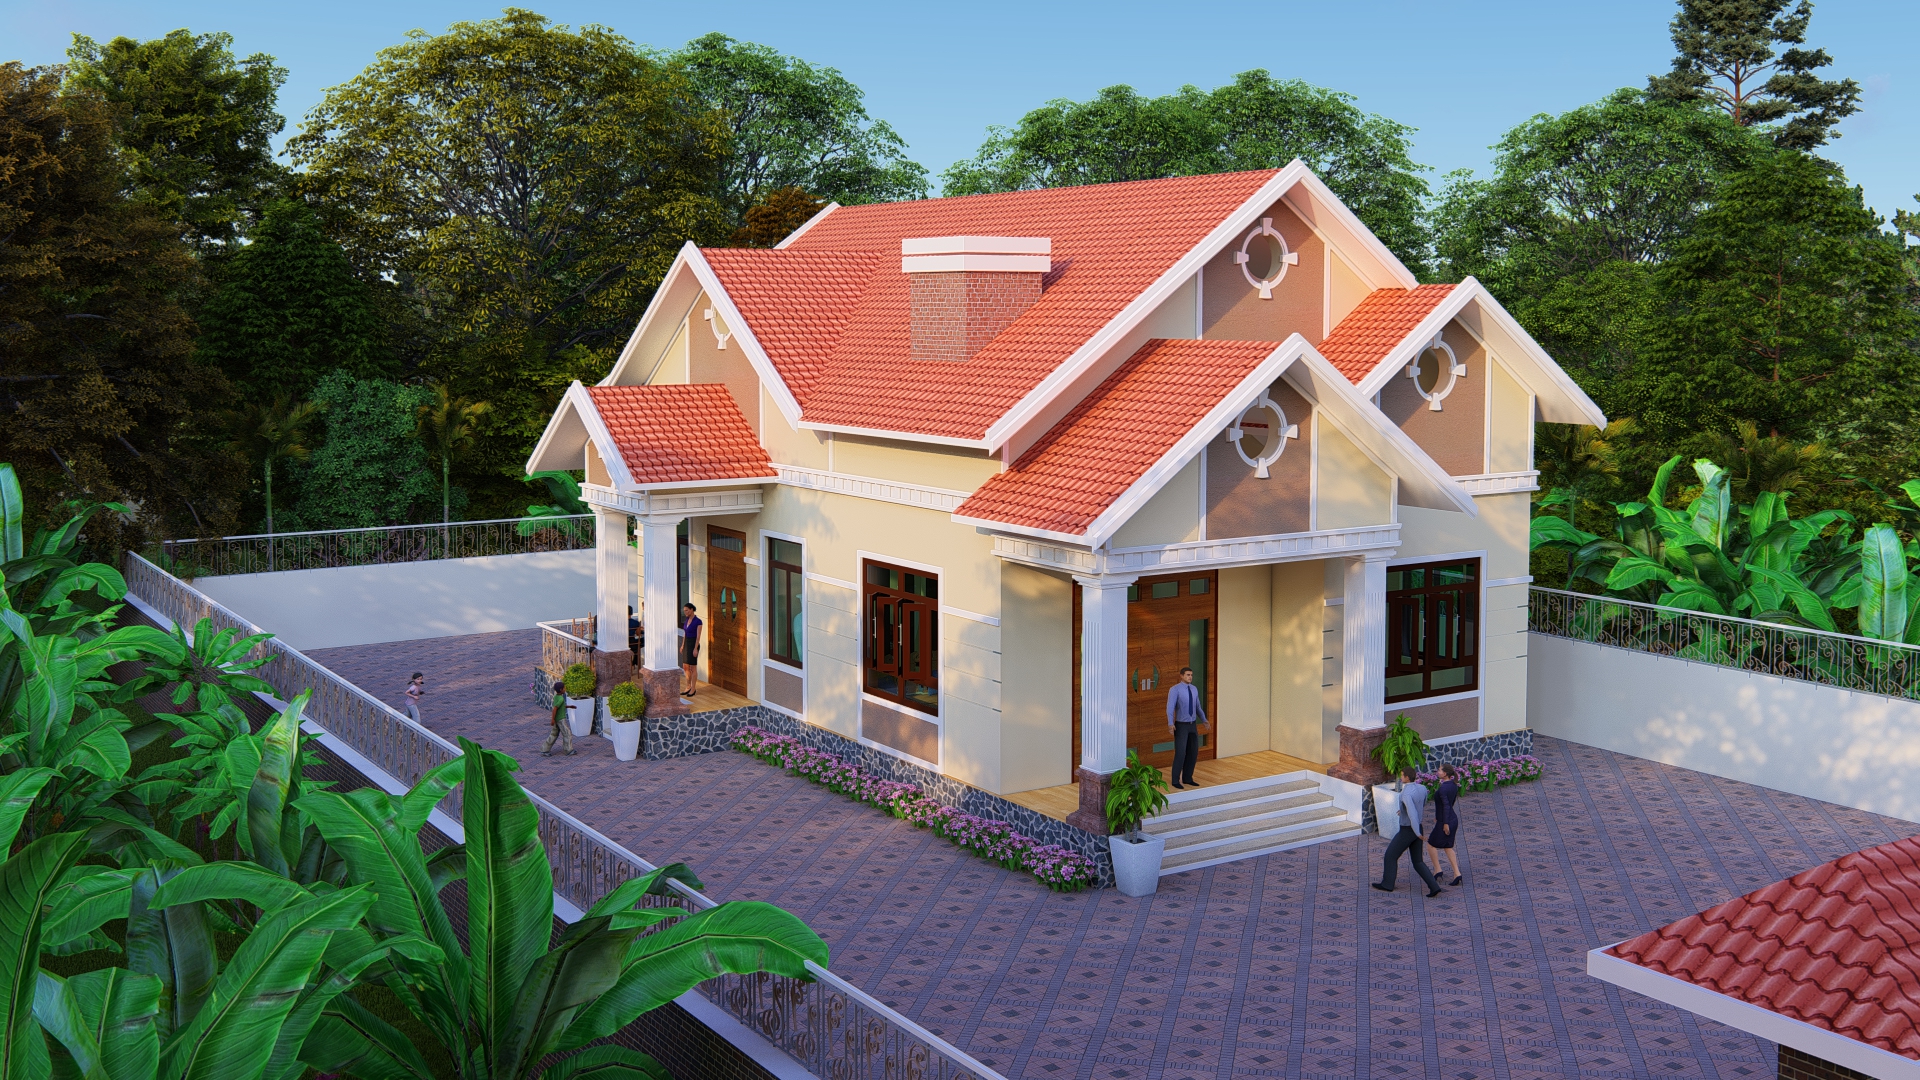 Thiết kế Nhà tại Lạng Sơn NHÀ VƯỜN MÁI THÁI 1574063817 1